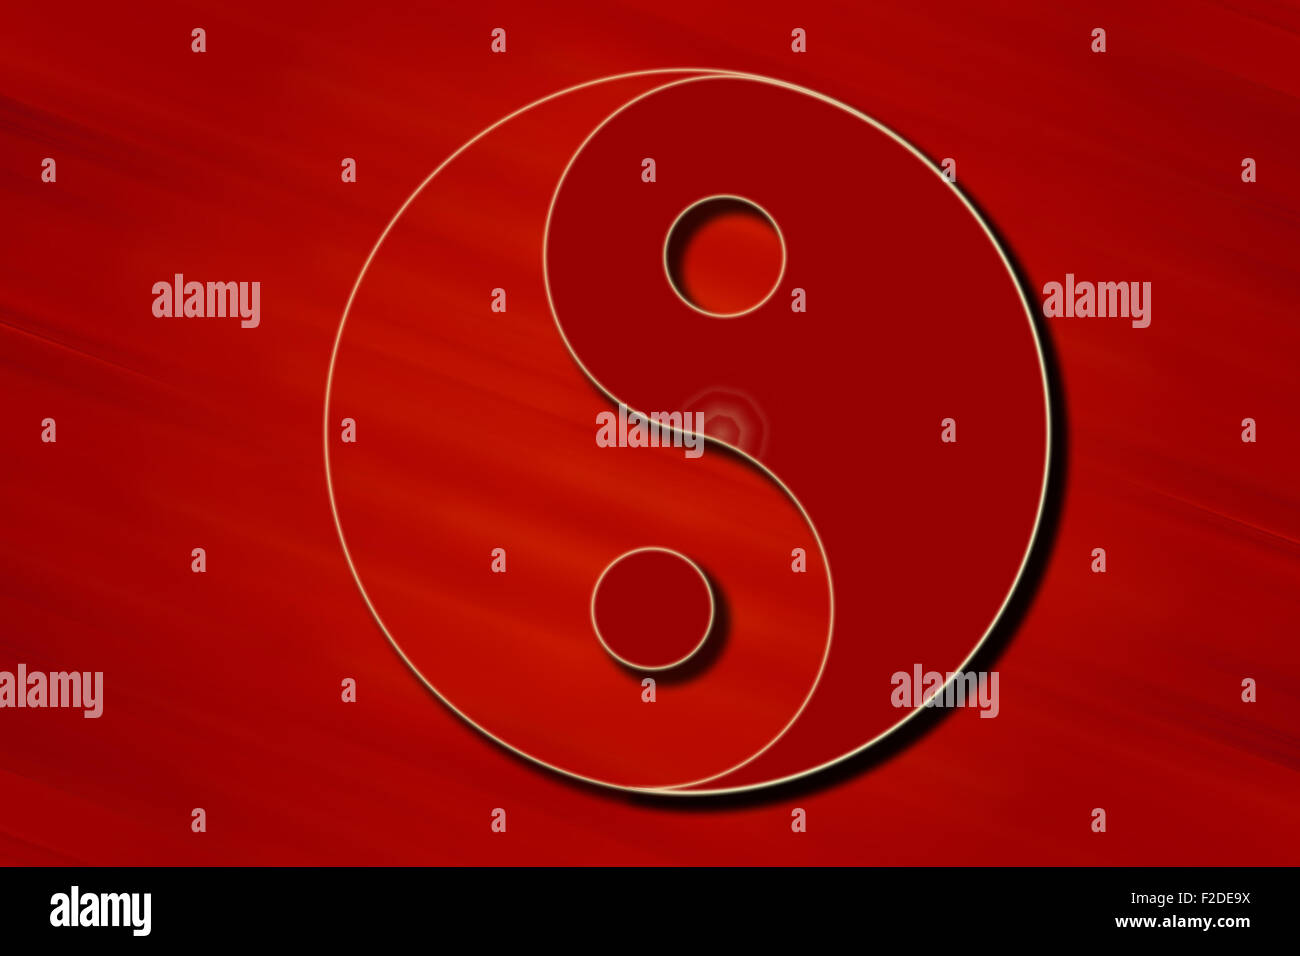 Le symbole Yin Yang stylisé de couleur rouge. Banque D'Images